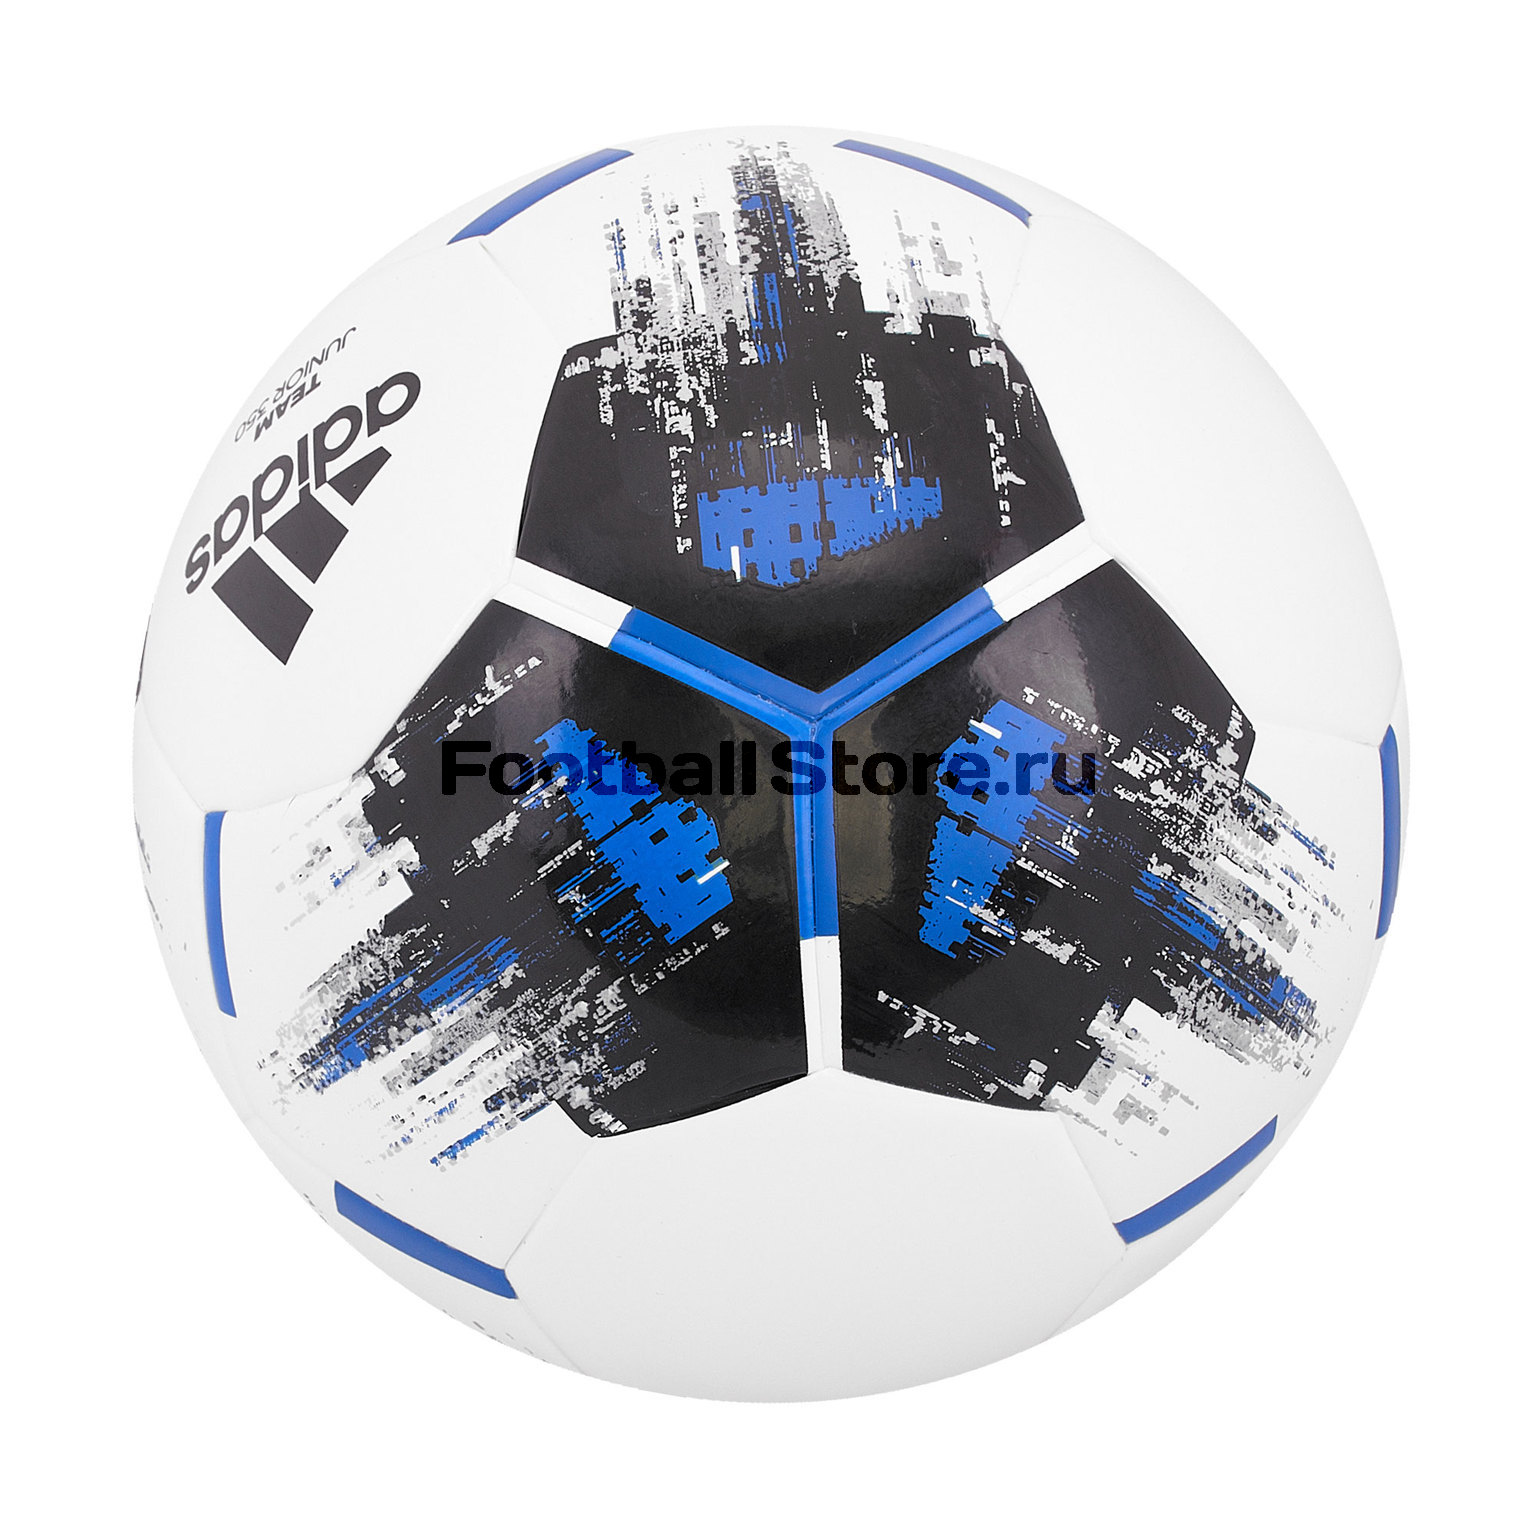 Футбольный мяч Adidas Team J350 CZ9573